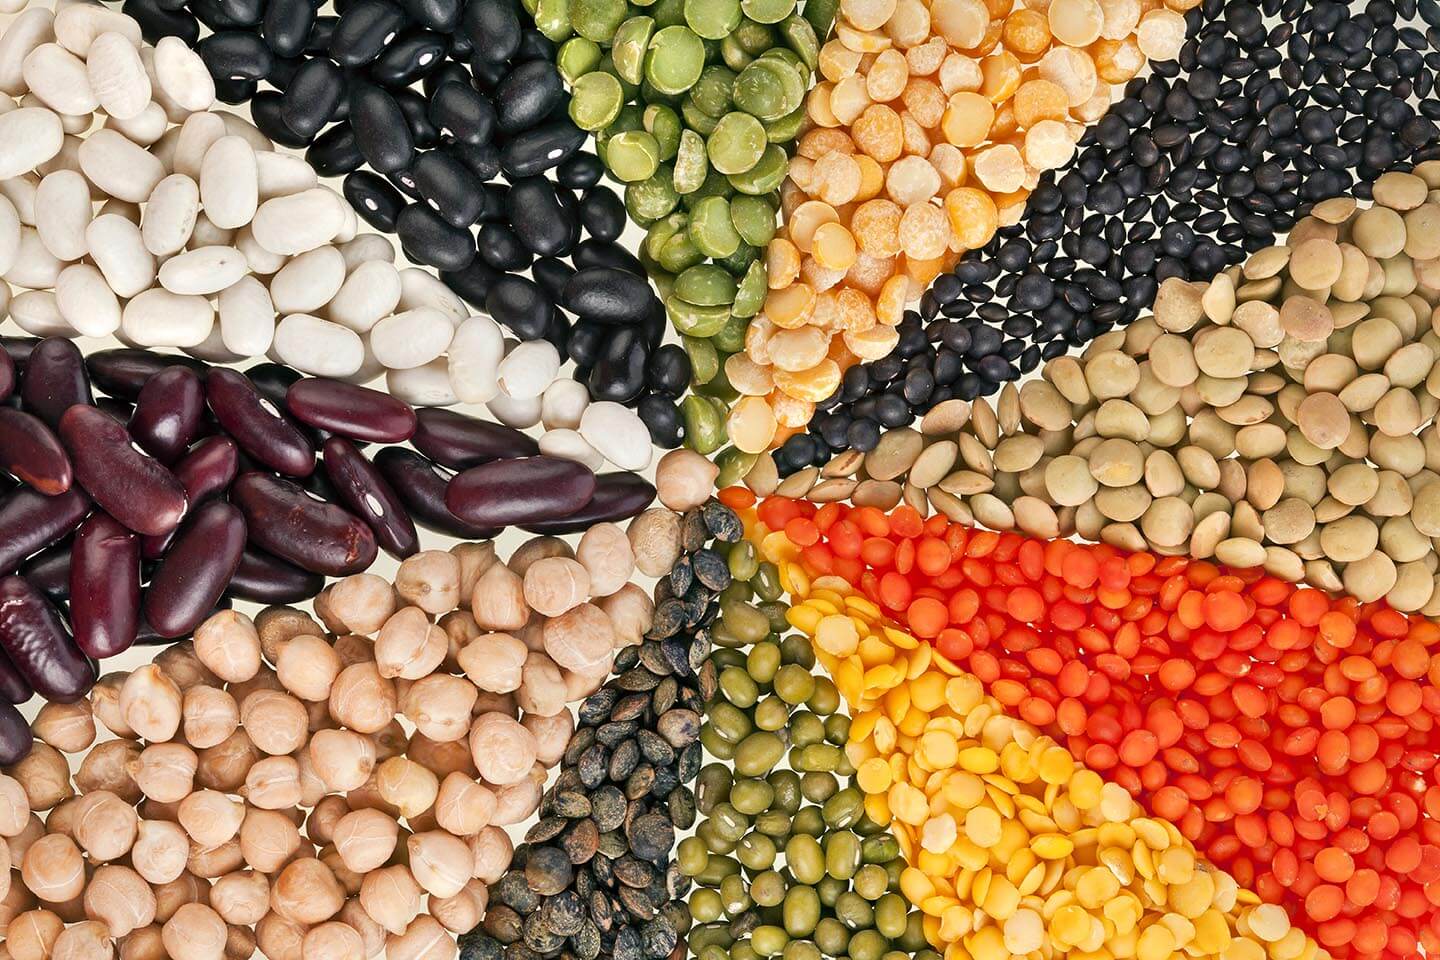 mai multe tipuri de seminte cu o cantitate mare de proteine